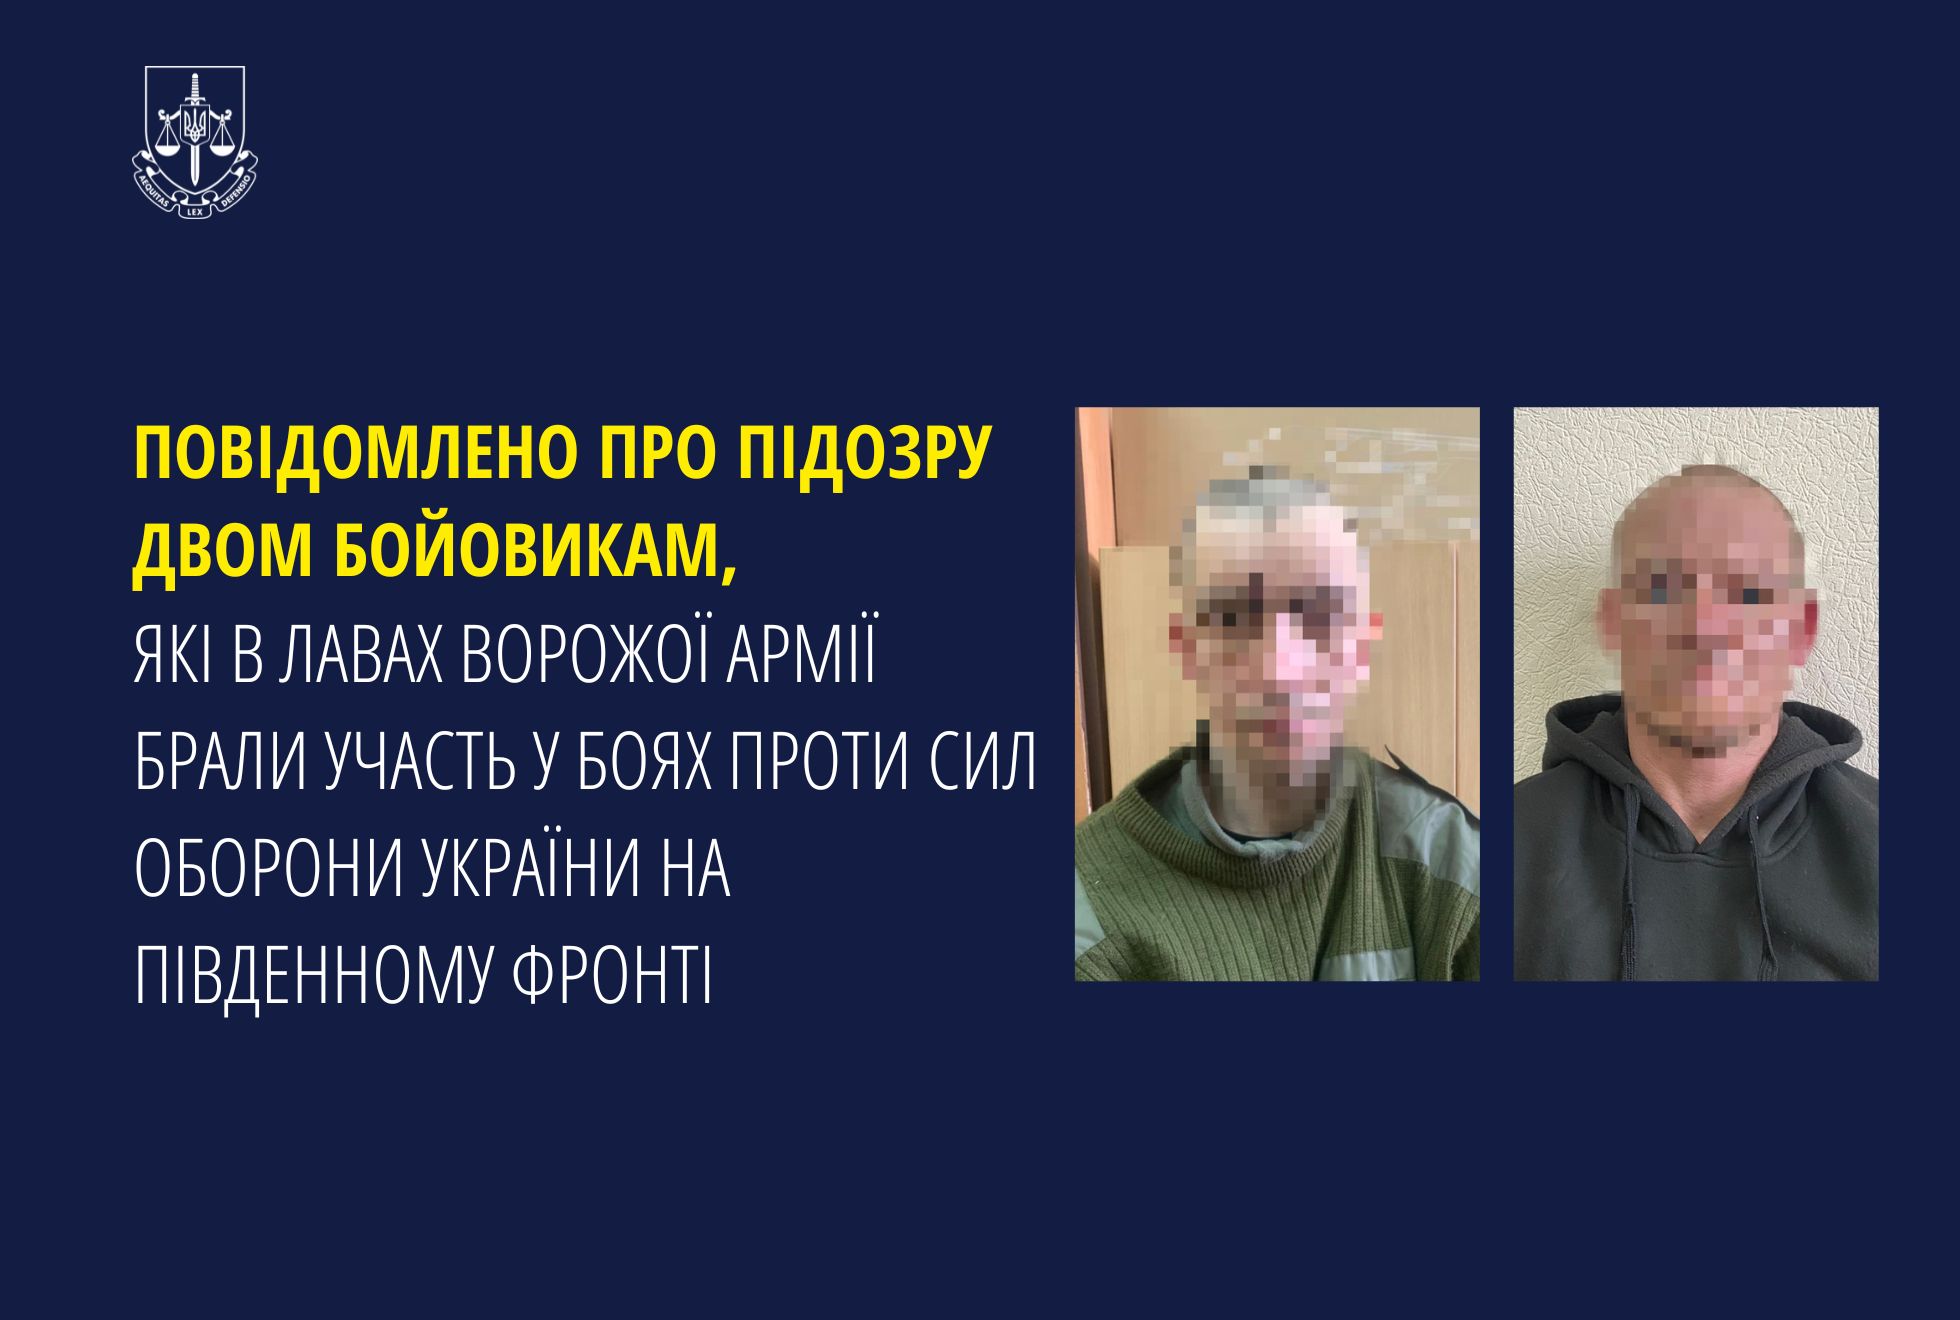 Повідомлено про підозру двом бойовикам, які в лавах ворожої армії брали участь у боях проти Сил оборони України на південному фронті